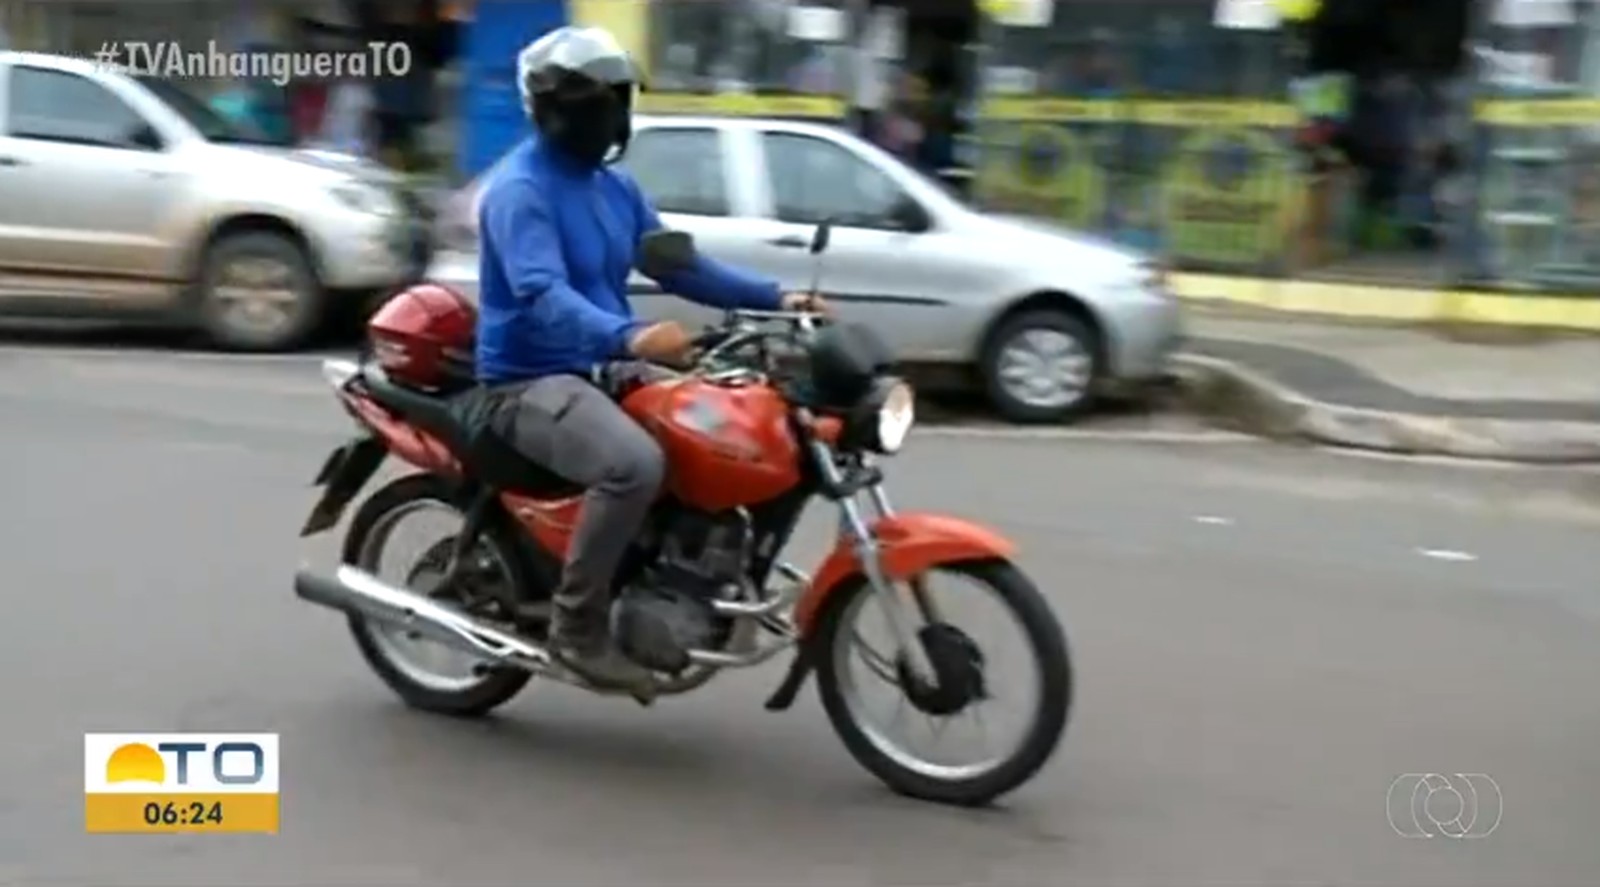 Andar com capacete extra vai gerar multa em Araguaína — Foto: Reprodução/TV Anhanguera